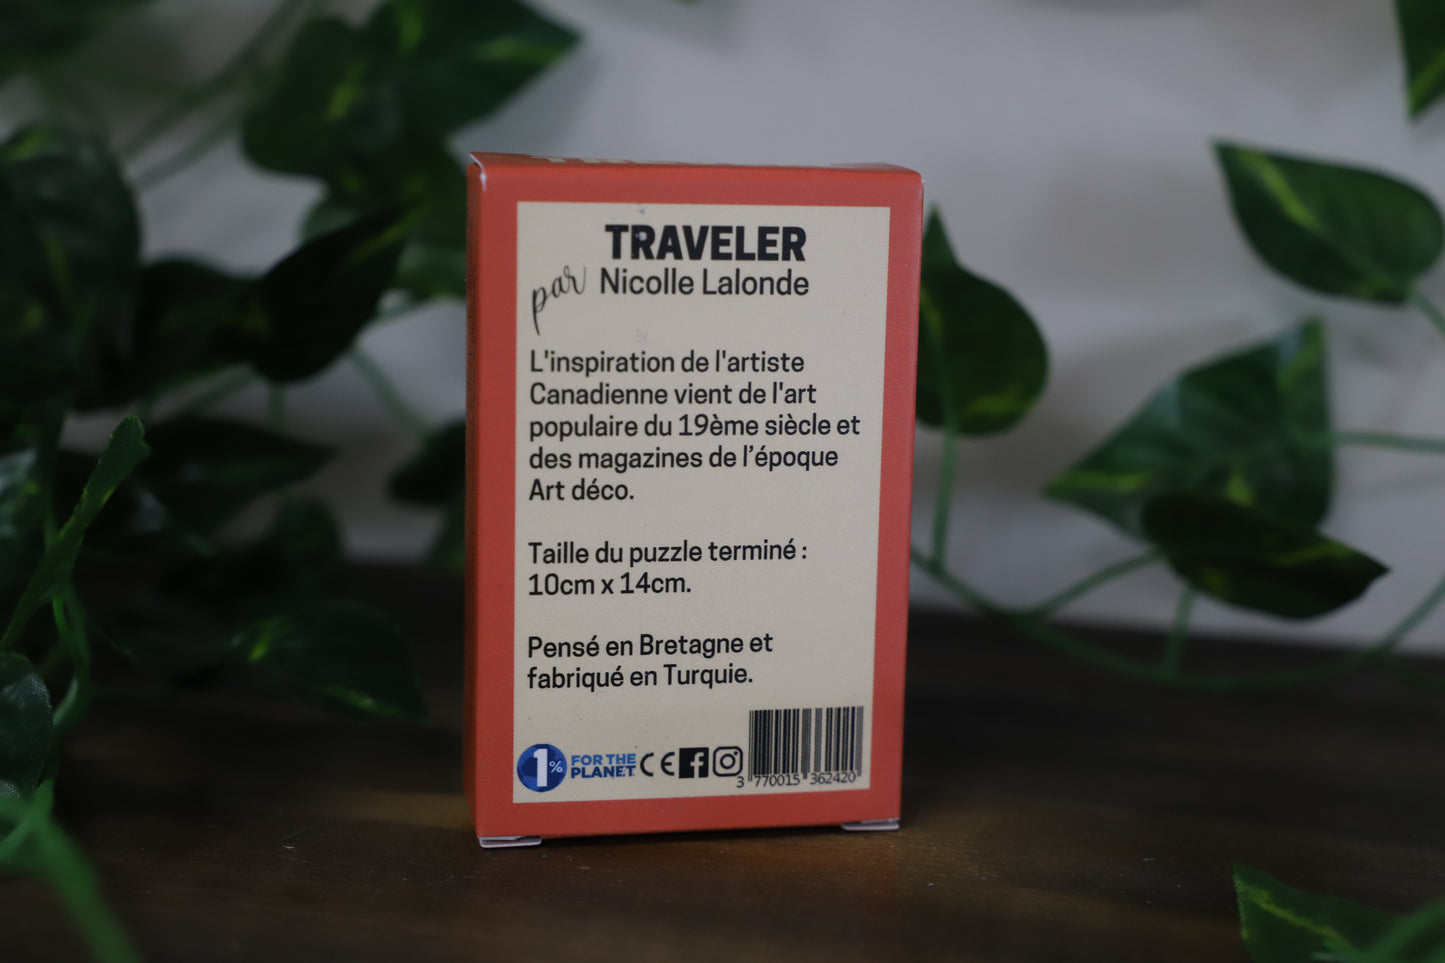 Traveler by Trevell 99pc